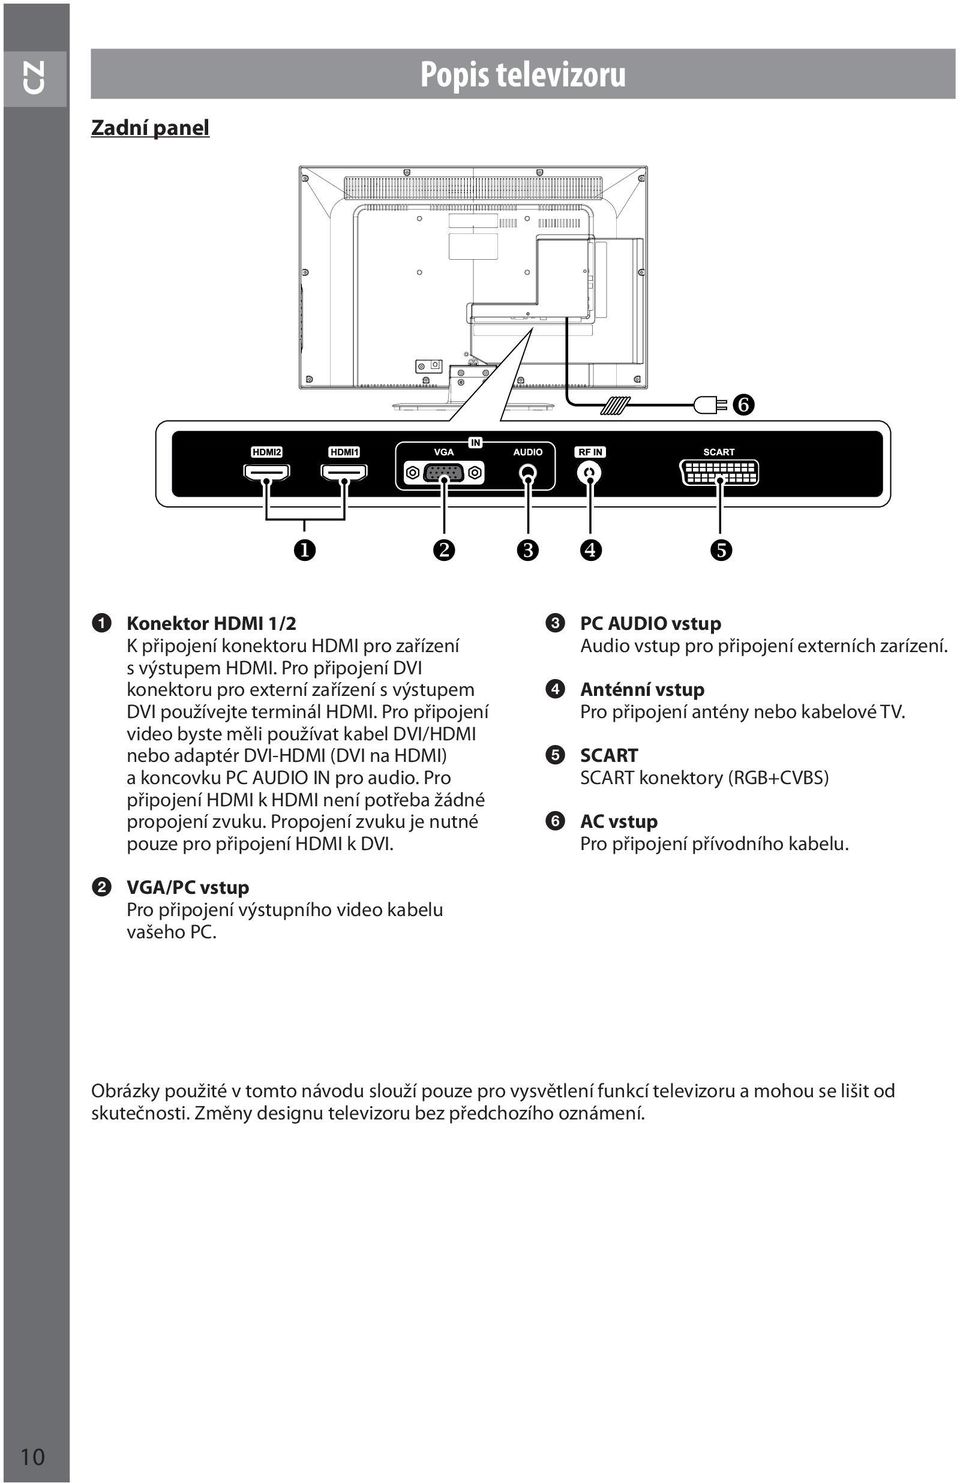 Propojení zvuku je nutné pouze pro připojení HDMI k DVI. 3 PC AUDIO vstup Audio vstup pro připojení externích zarízení. 4 Anténní vstup Pro připojení antény nebo kabelové TV.